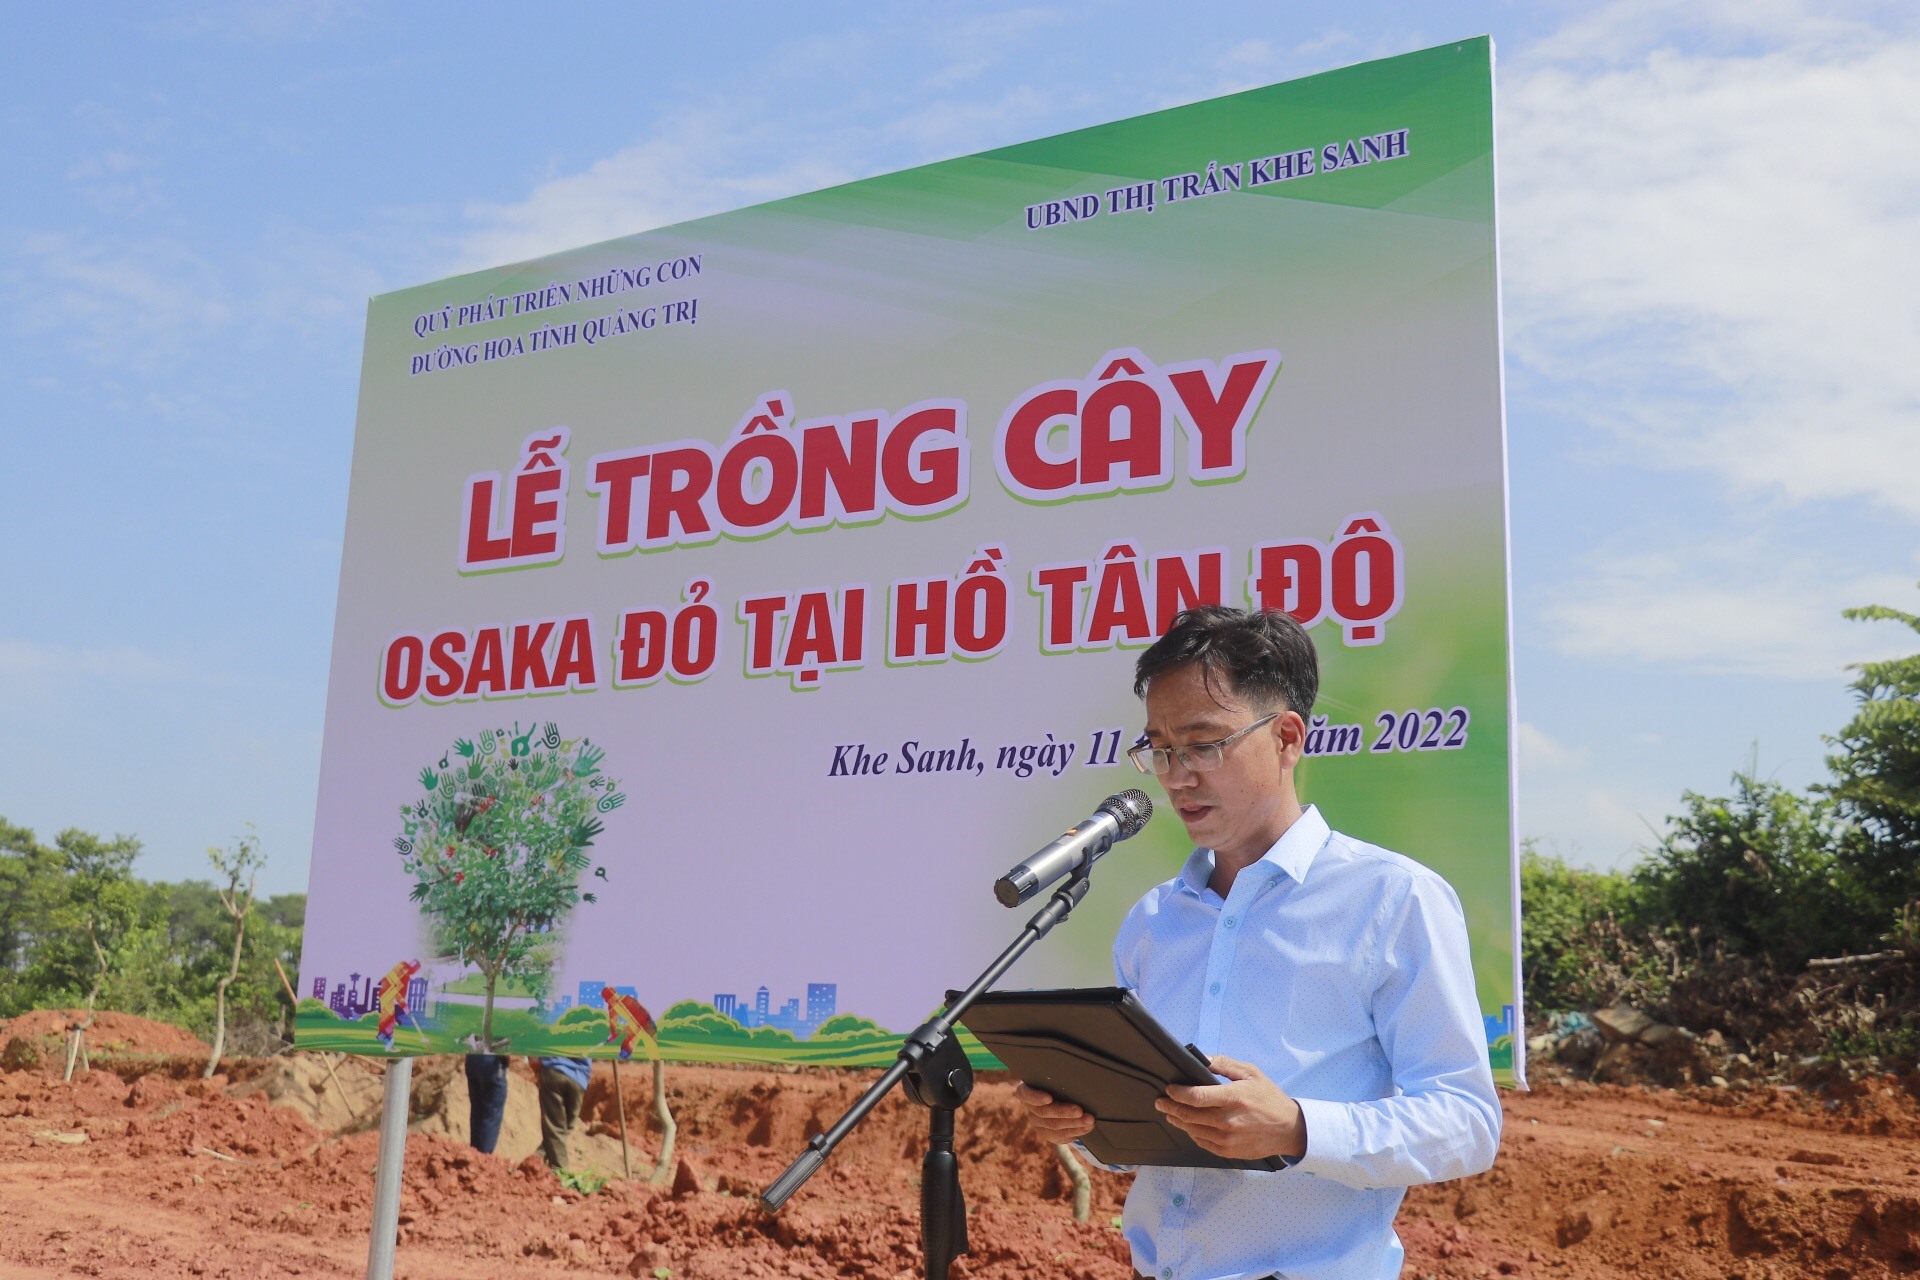 Ông Nguyễn Thanh Châu, Phó chủ tịch Thị trấn Khe Sanh phát biểu tại buổi Lễ.